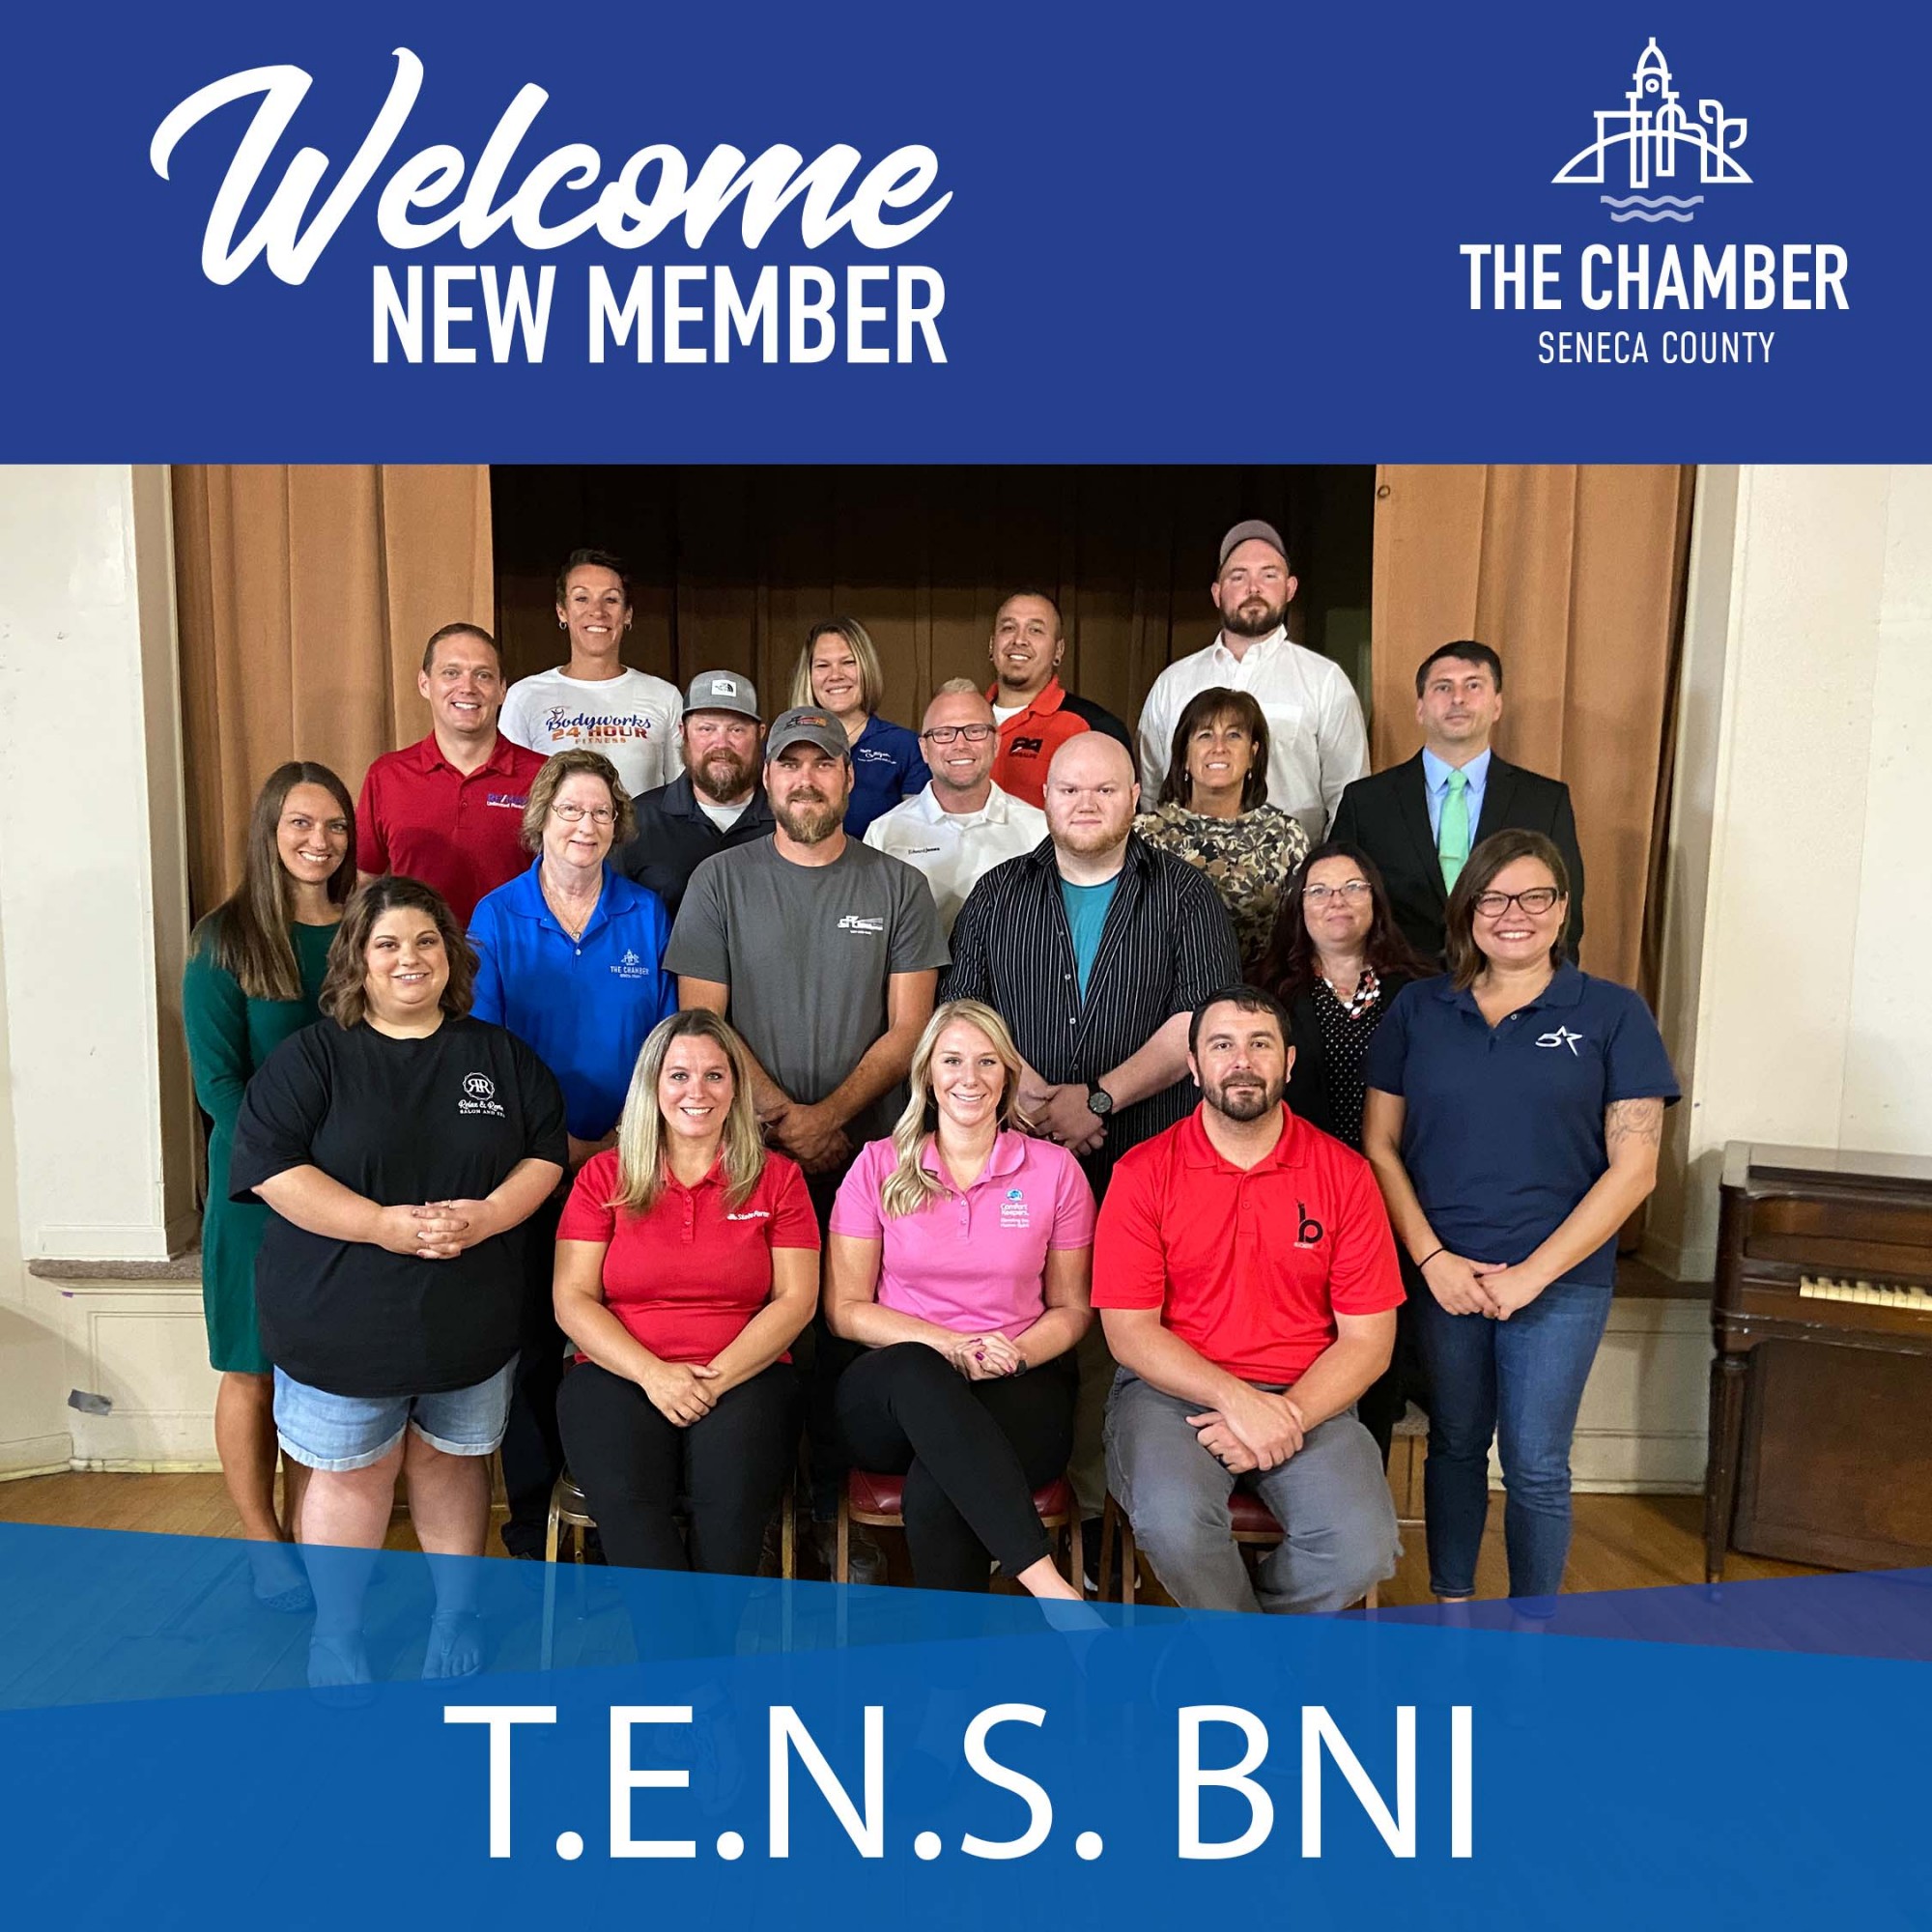 New Member: T.E.N.S. BNI